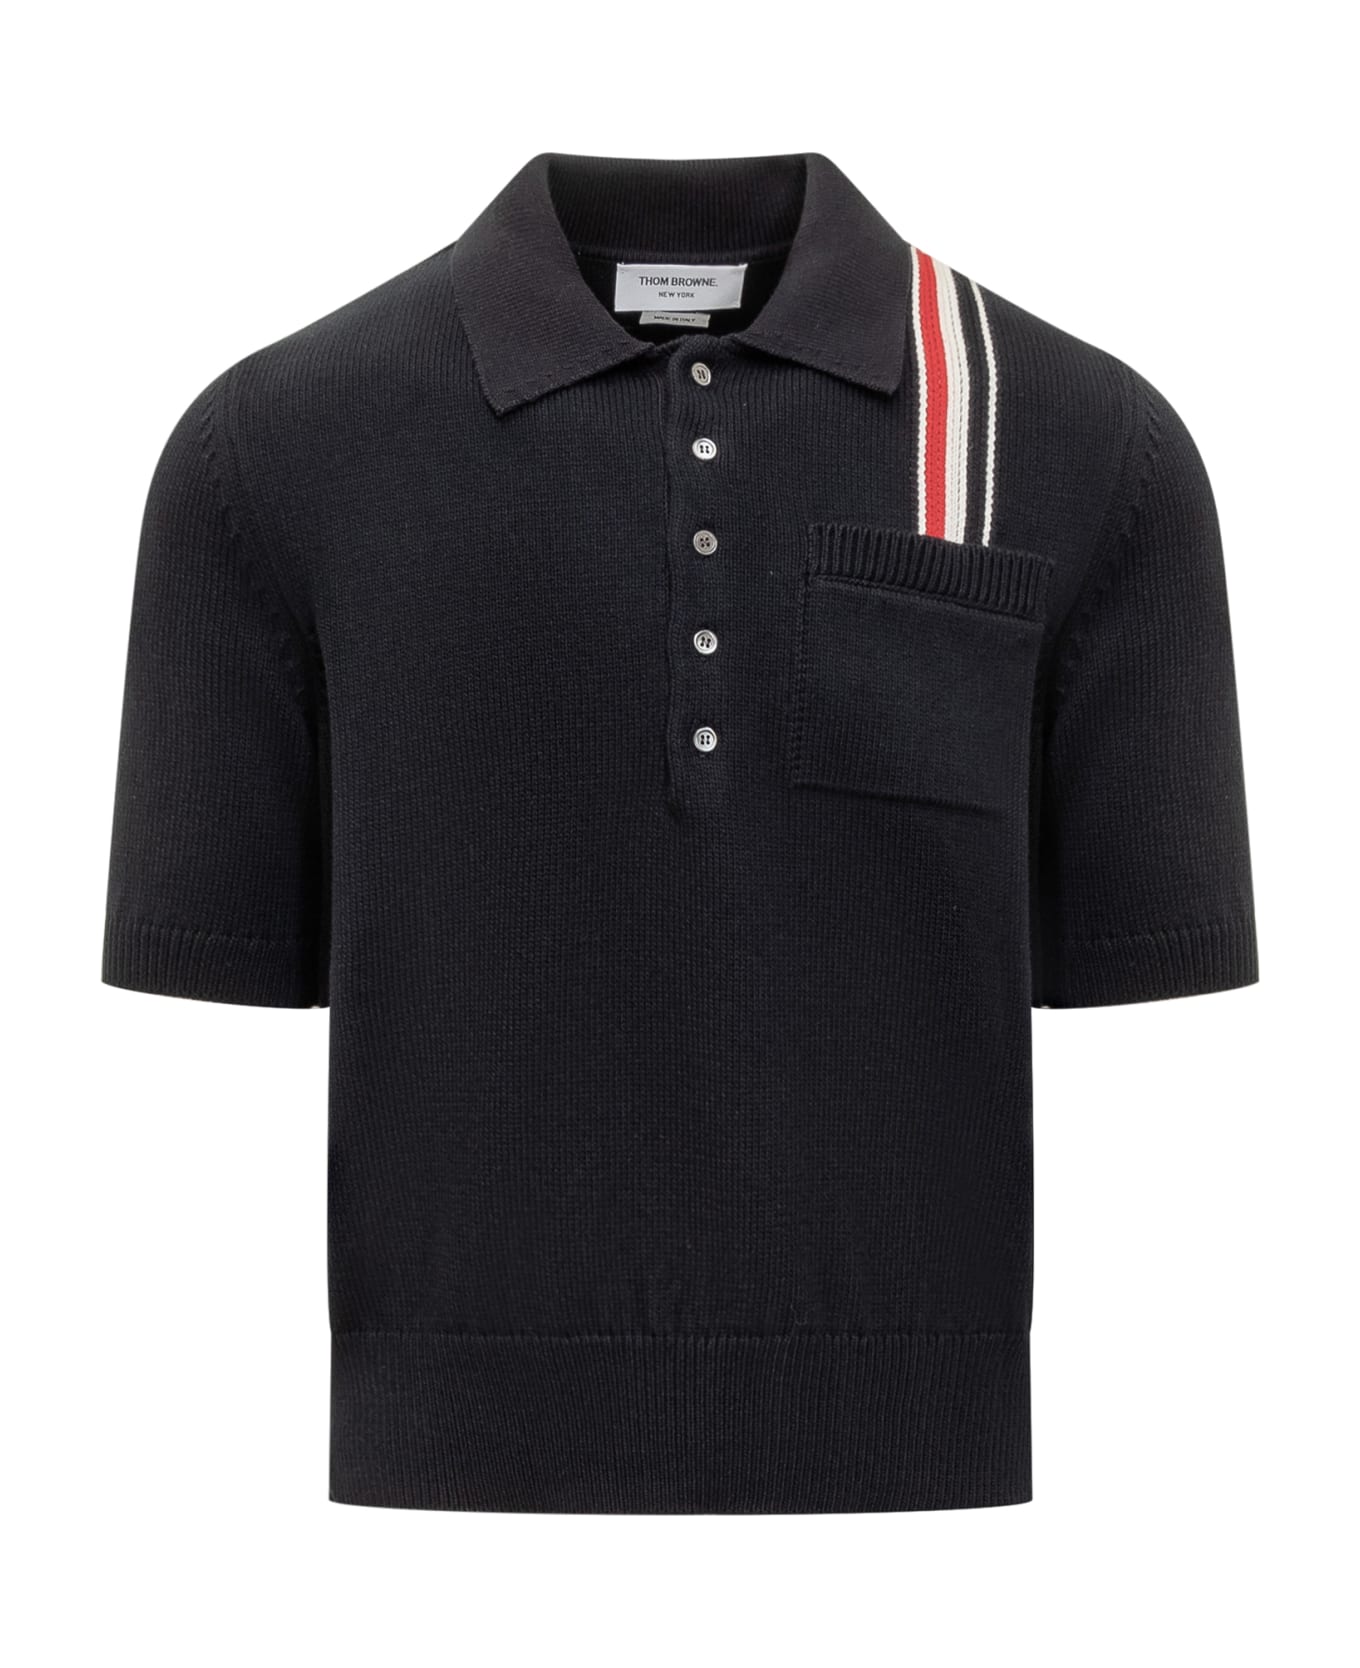 Thom Browne Polo Shirt - Navy